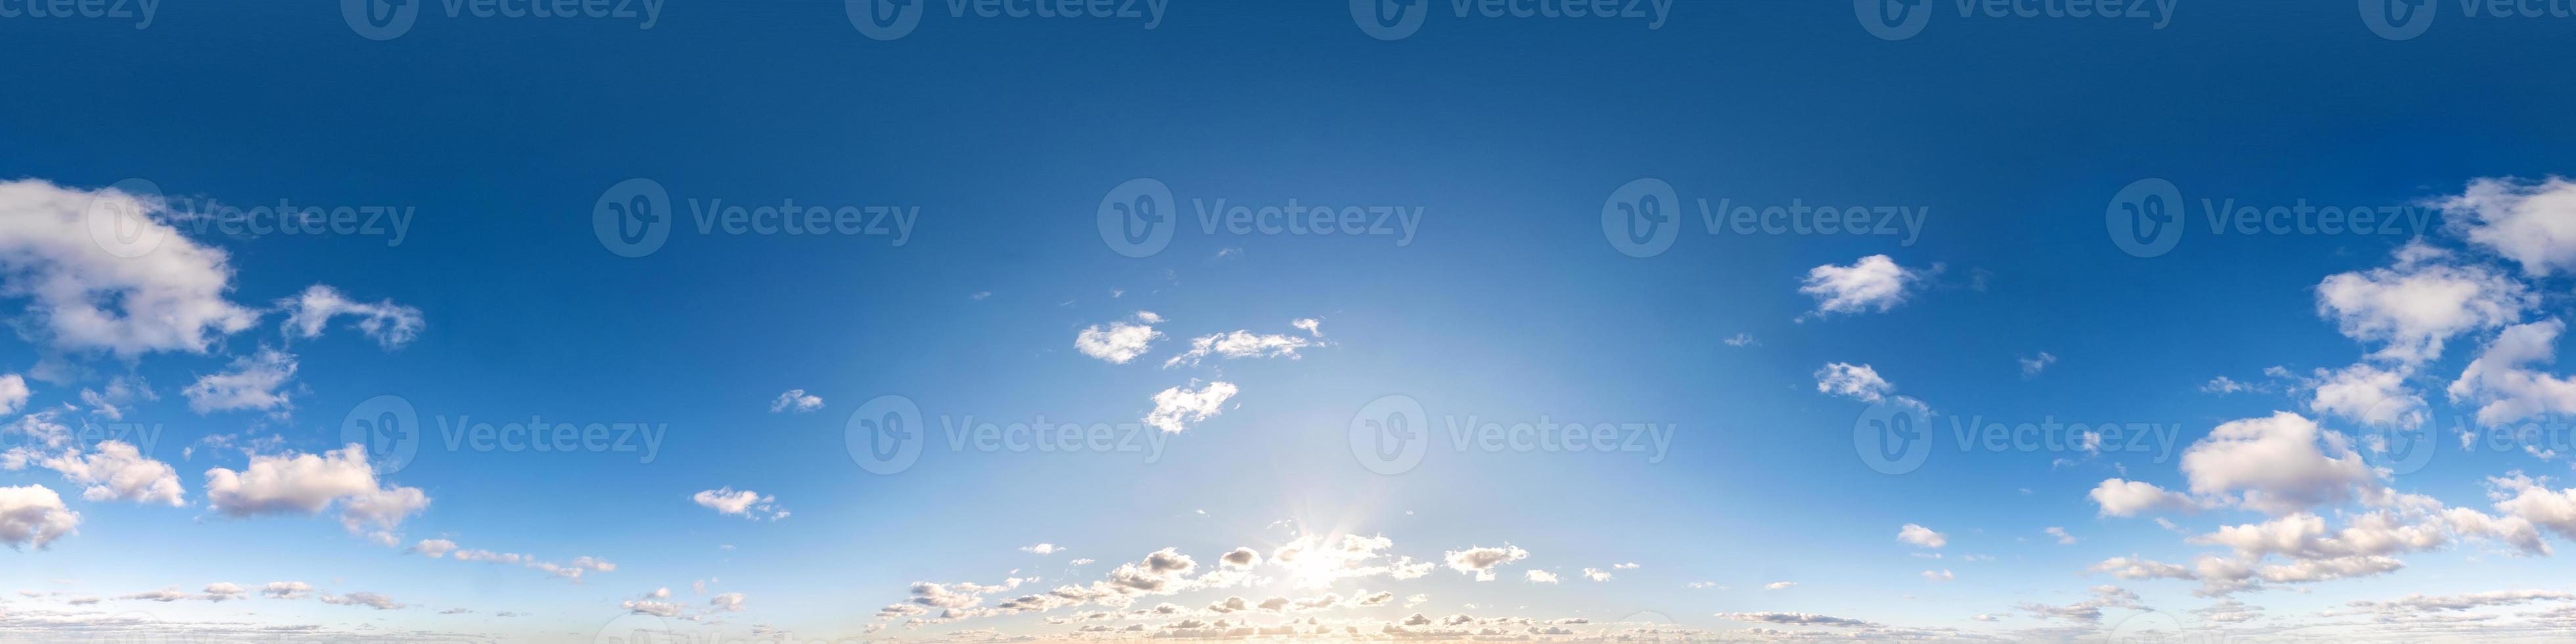 sömlös hdri panorama 360 graders vinkelvy blå himmel med vackra fluffiga cumulusmoln med zenit för användning i 3d-grafik eller spelutveckling som skydome eller redigera drönarbild foto